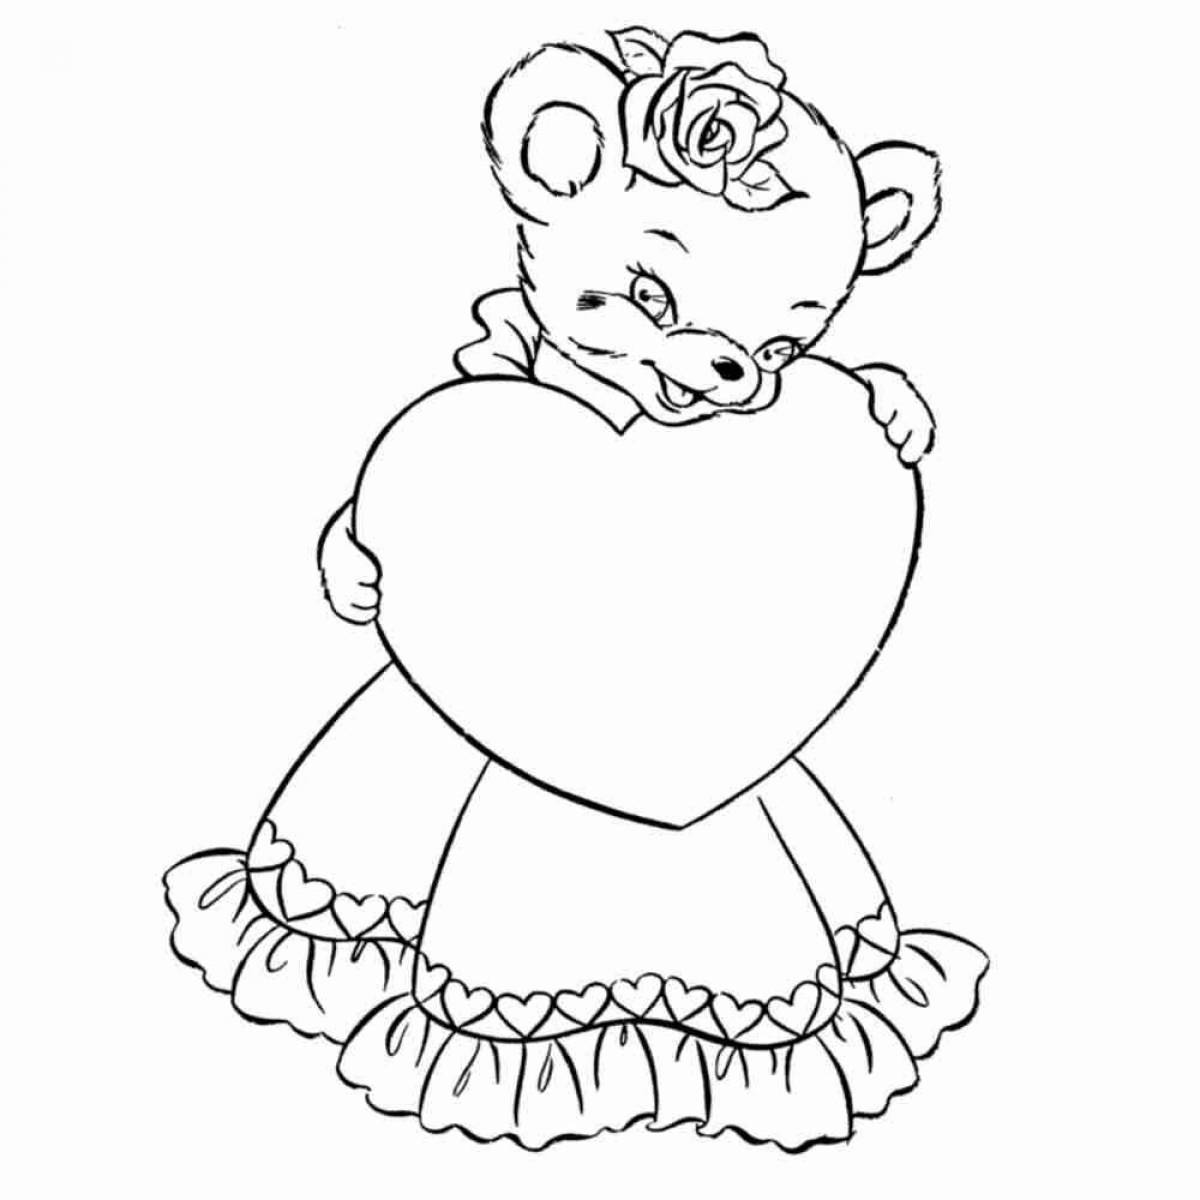 Красочный плюшевый мишка с сердечком раскраска